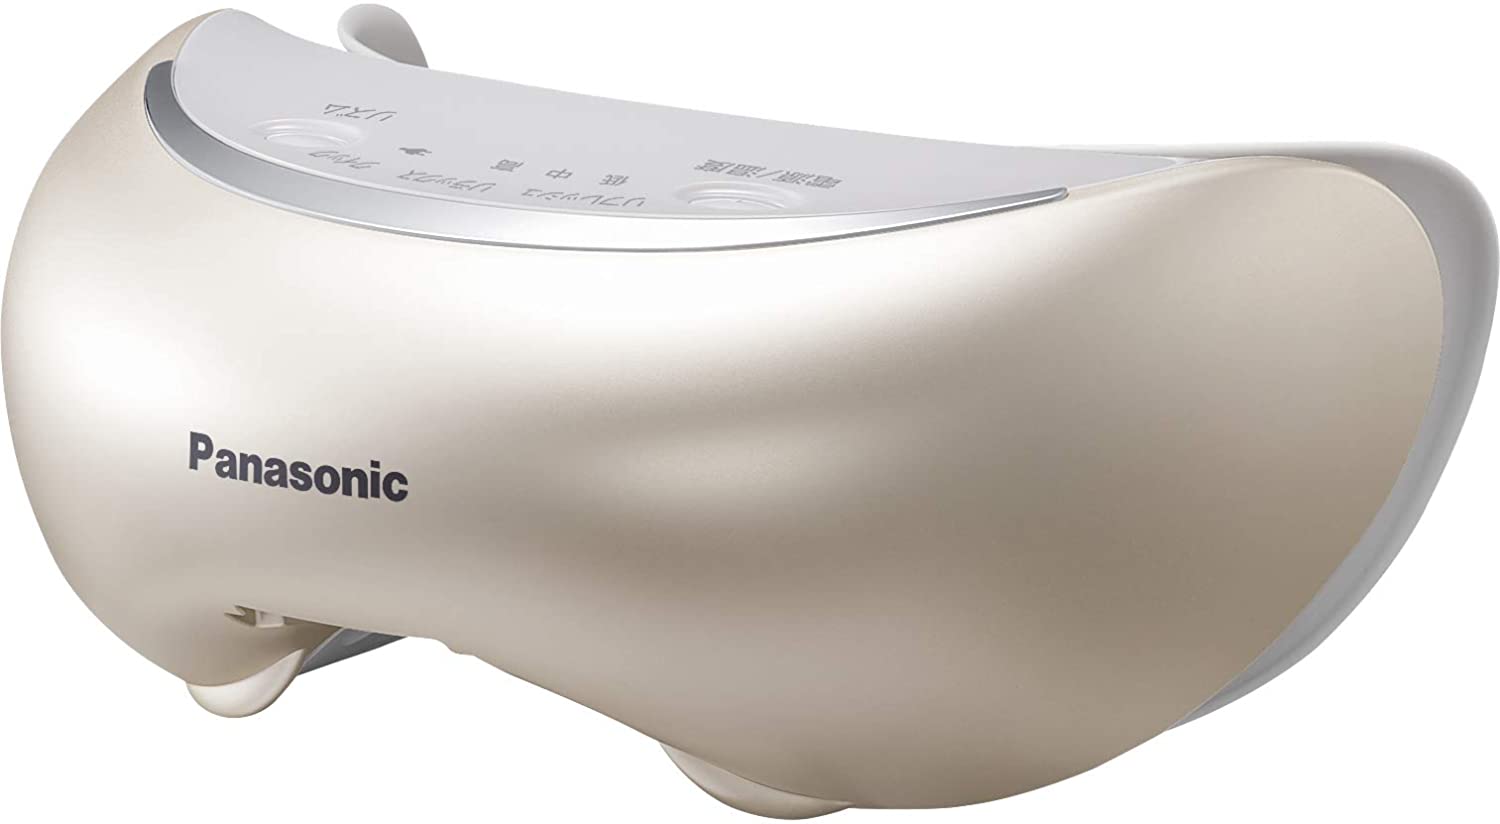 日本代購 空運 2020新款 Panasonic 國際牌 EH-SW68 眼部蒸氣按摩器 電熱眼罩 按摩 舒壓